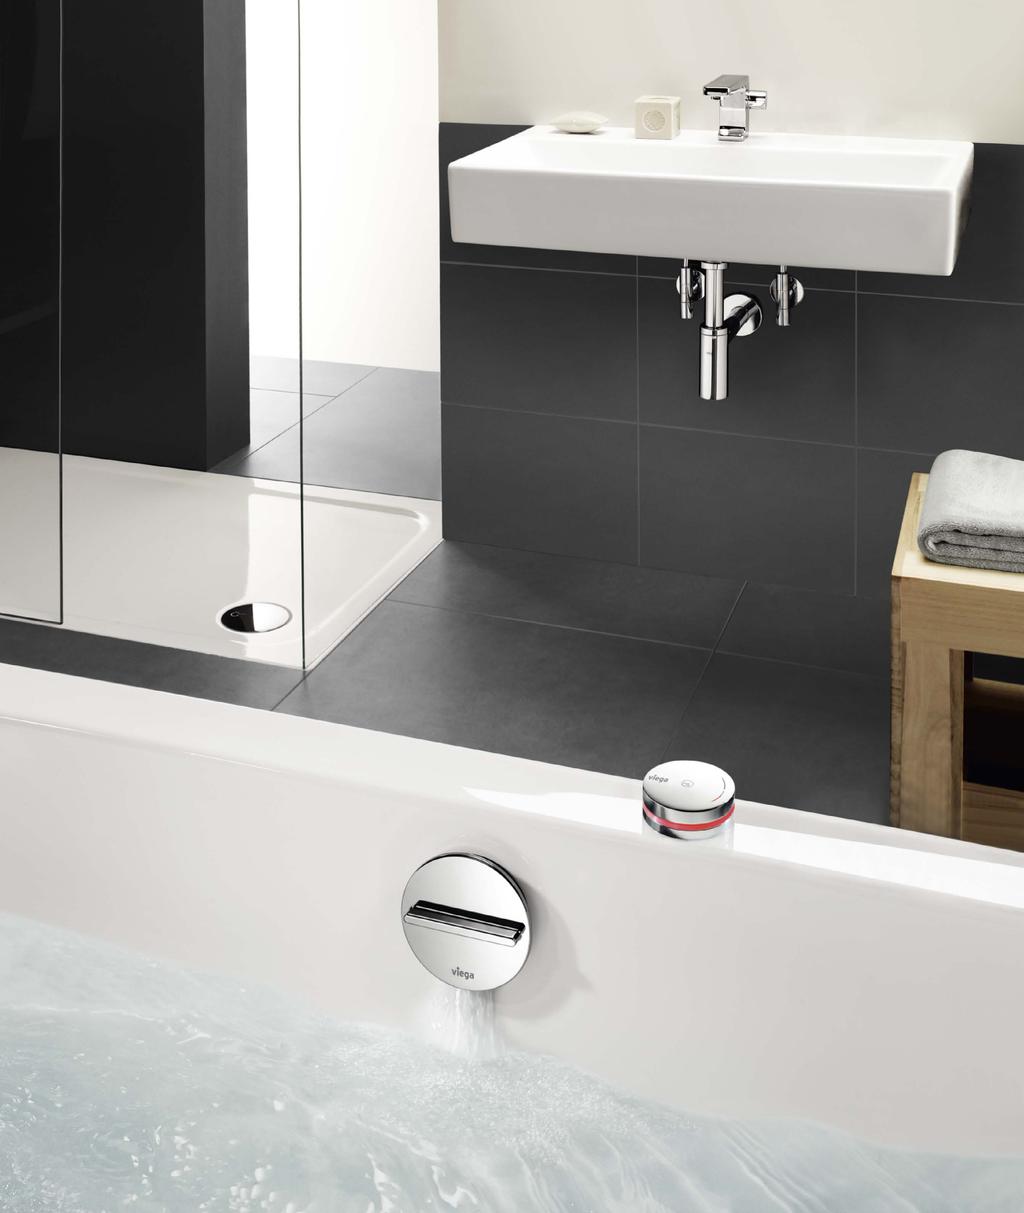 Soupravy Viega pro sprchové vaničky a koupací vany 25 Sprchové vaničce se v obytných prostorách ještě stále dává přednost, když je potřeba zvýšit komfort sprchování nenáročnou instalací.